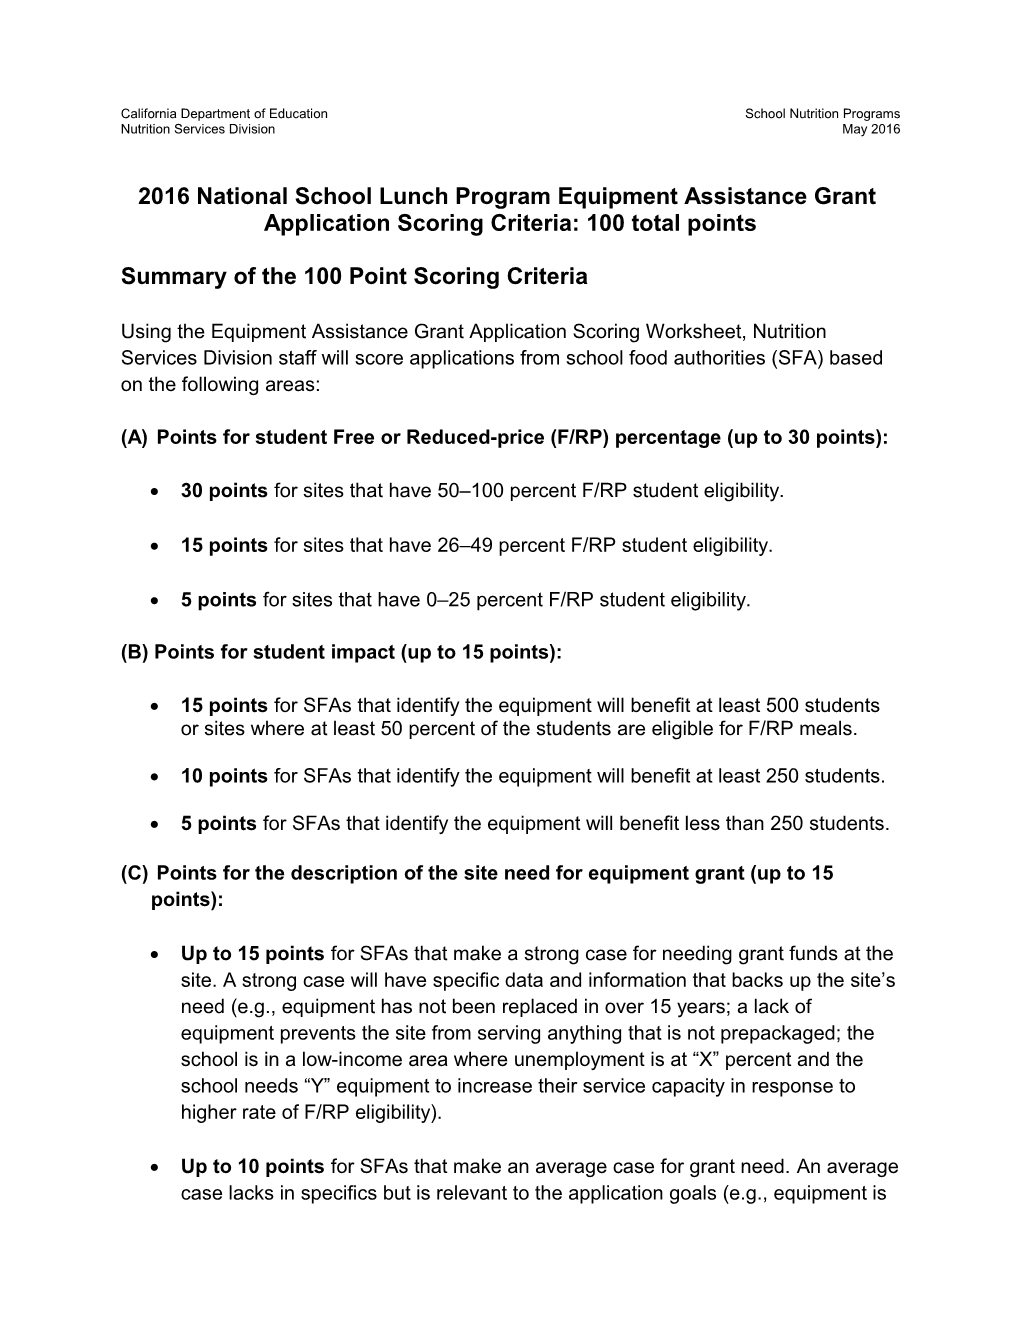 RFA: 2016 Equipment Grant Criteria (CA Dept of Education)